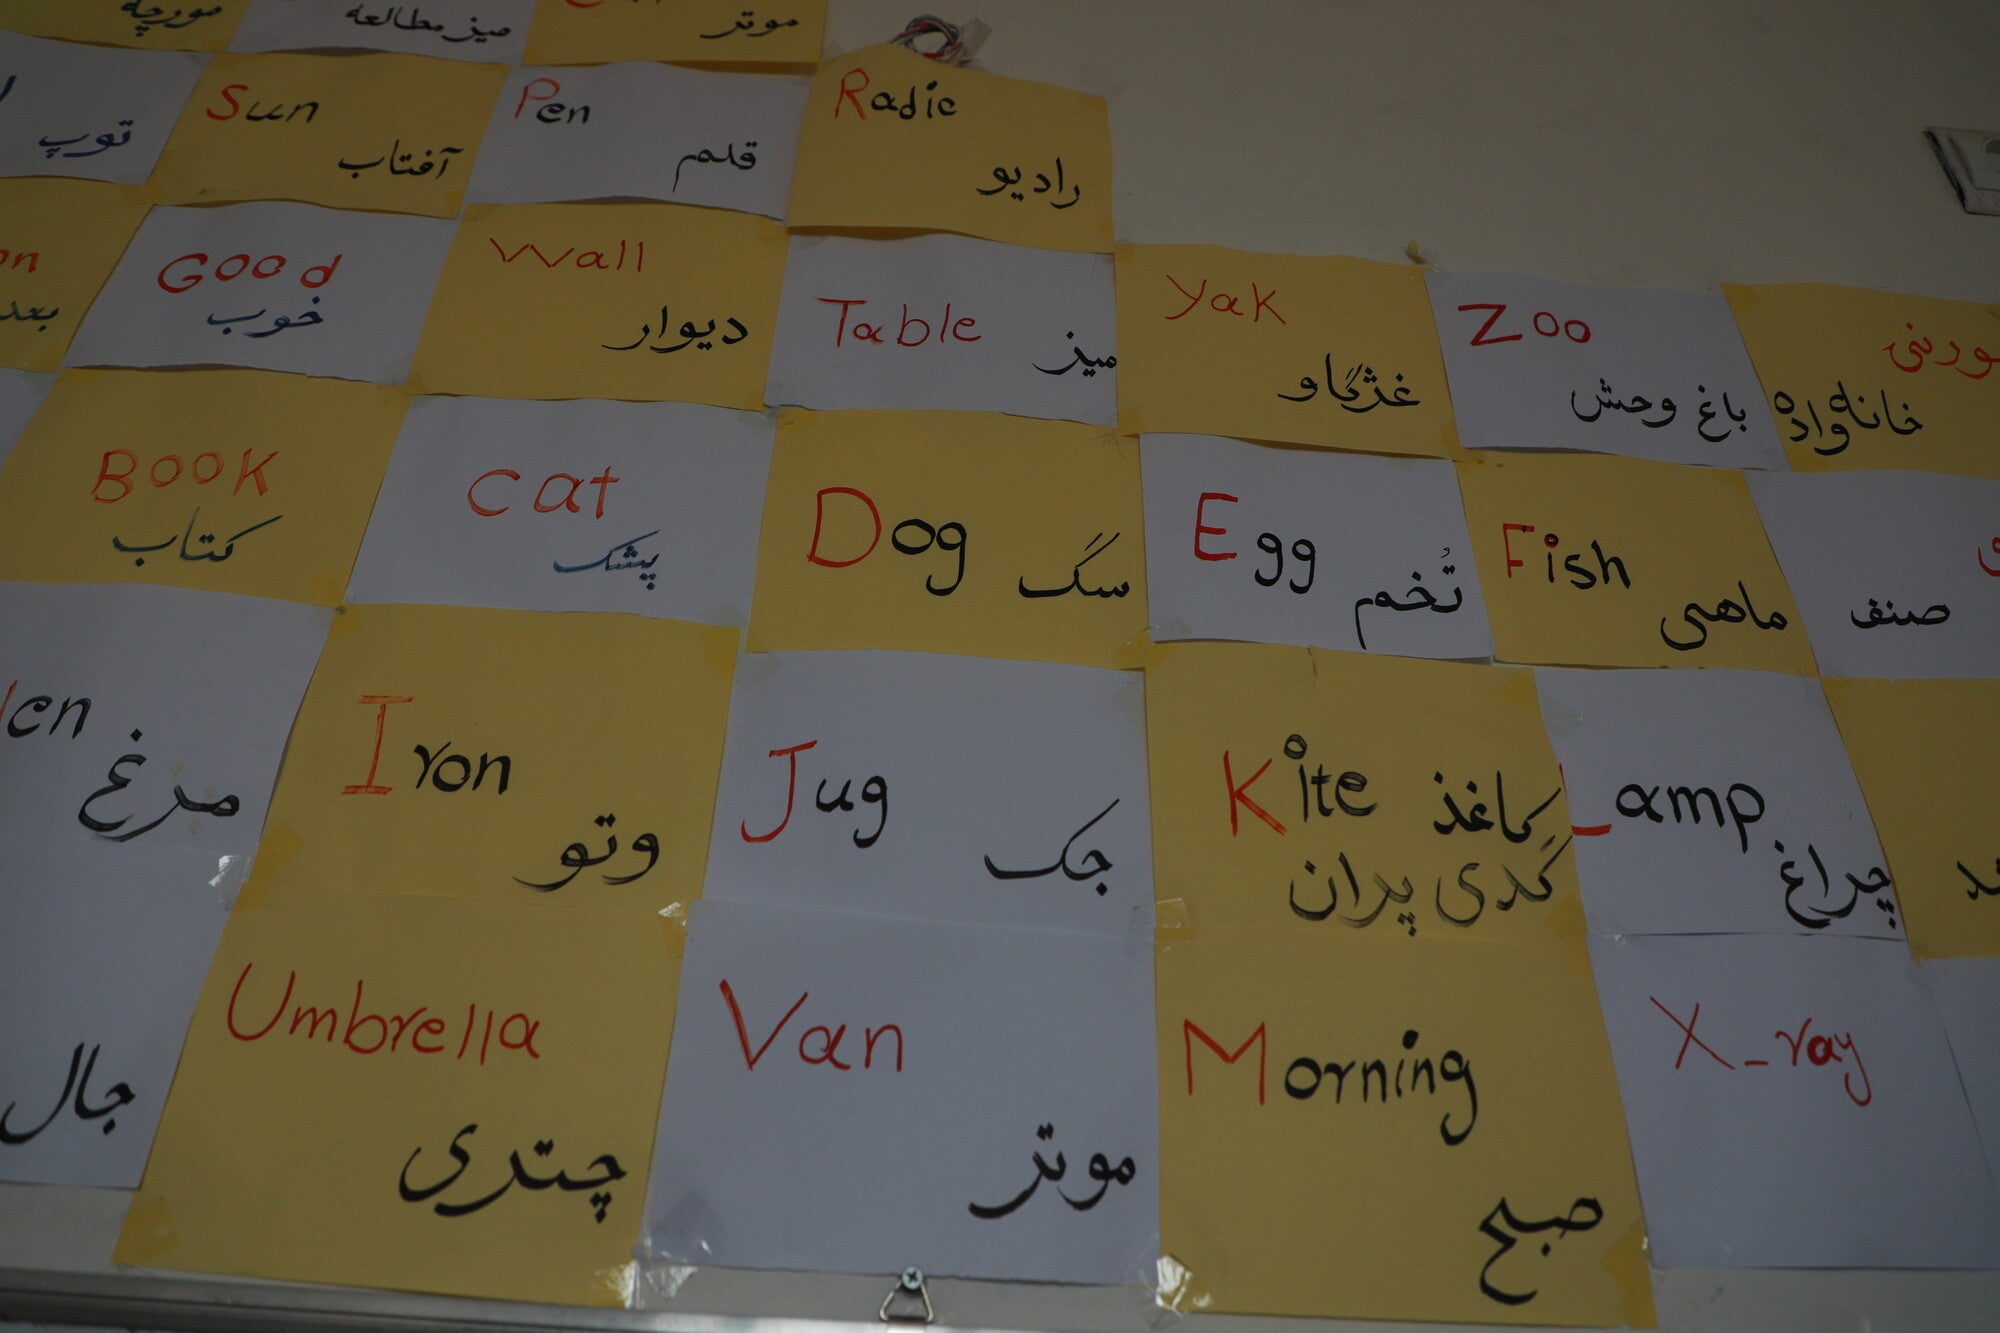 Primer plano de un tablero con palabras y traducciones.